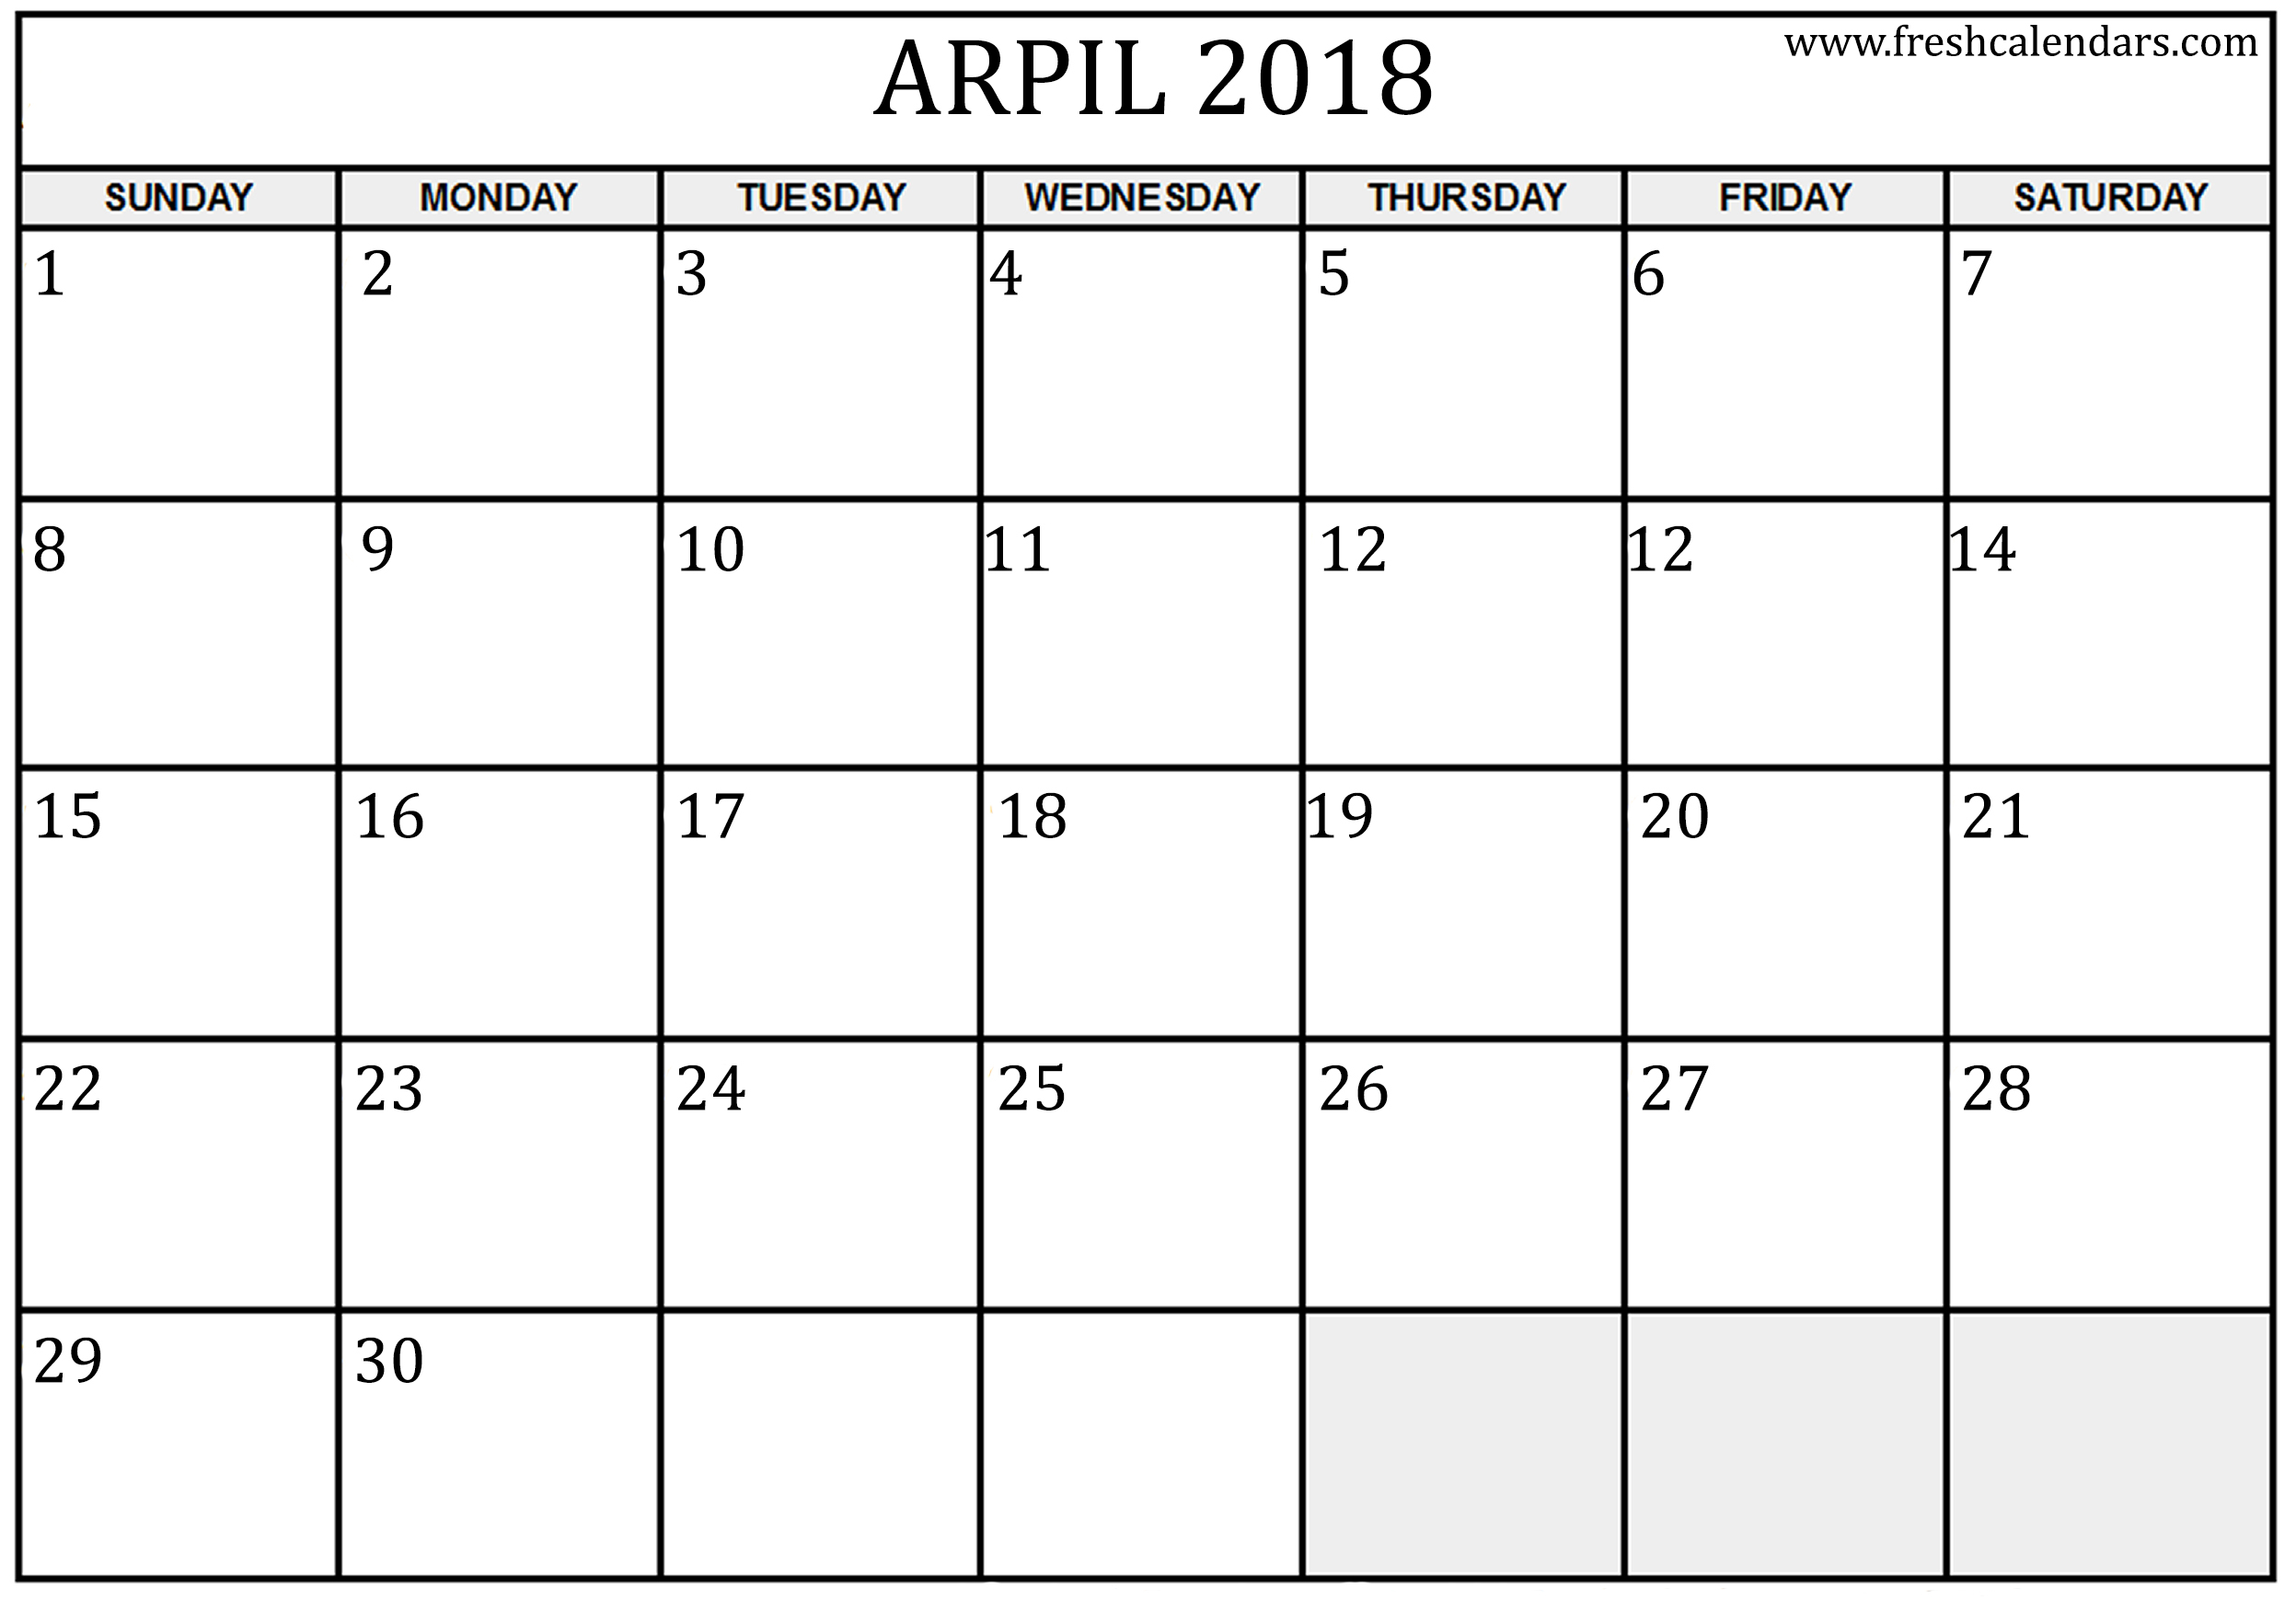 April 2018 Calendar FREE DOWNLOAD Cheetah Template